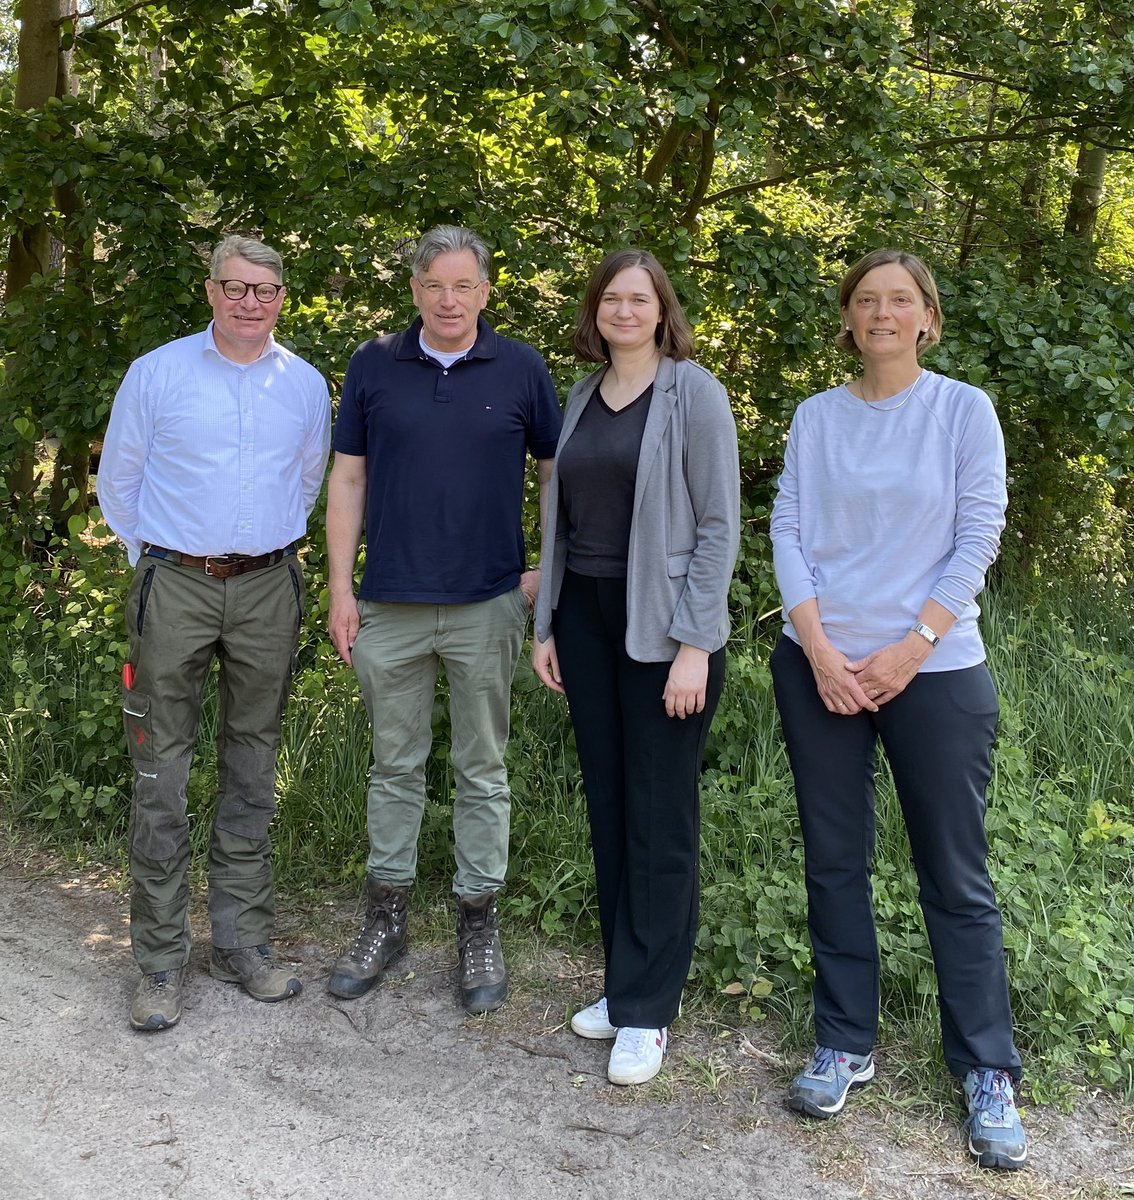 Liebe @GruenClaudia, danke für Ihren heutigen Waldbesuch in Mecklenburg-Vorpommern! 
Themen: Kleinprivatwald, GAK, Waldumbau und angepasste Wildbestände.